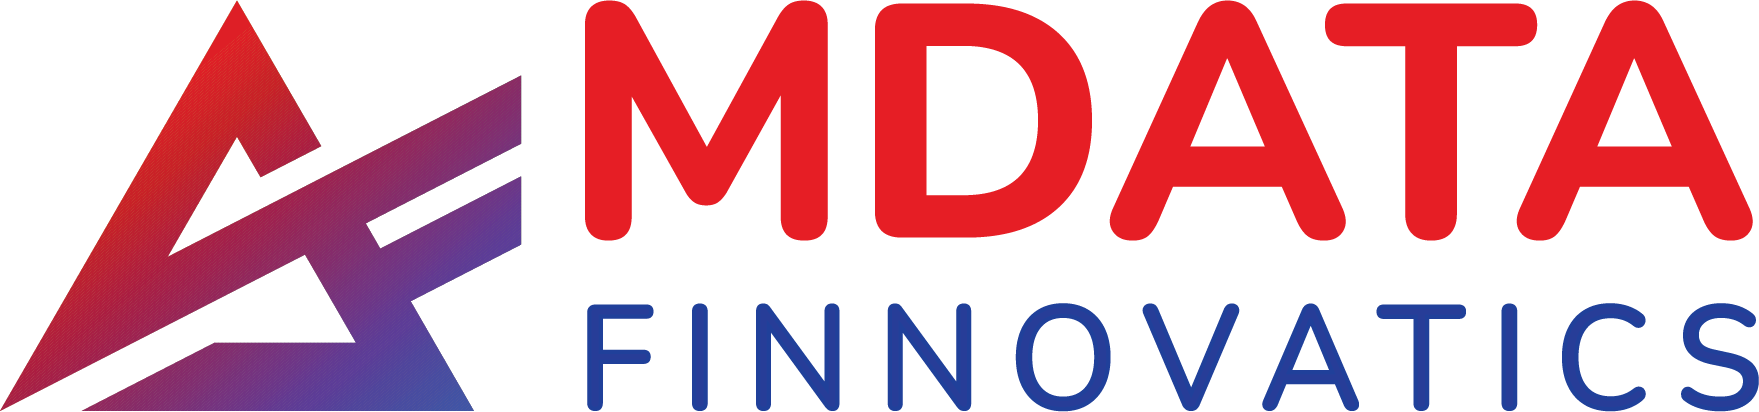 mdatafinnovatics Logo